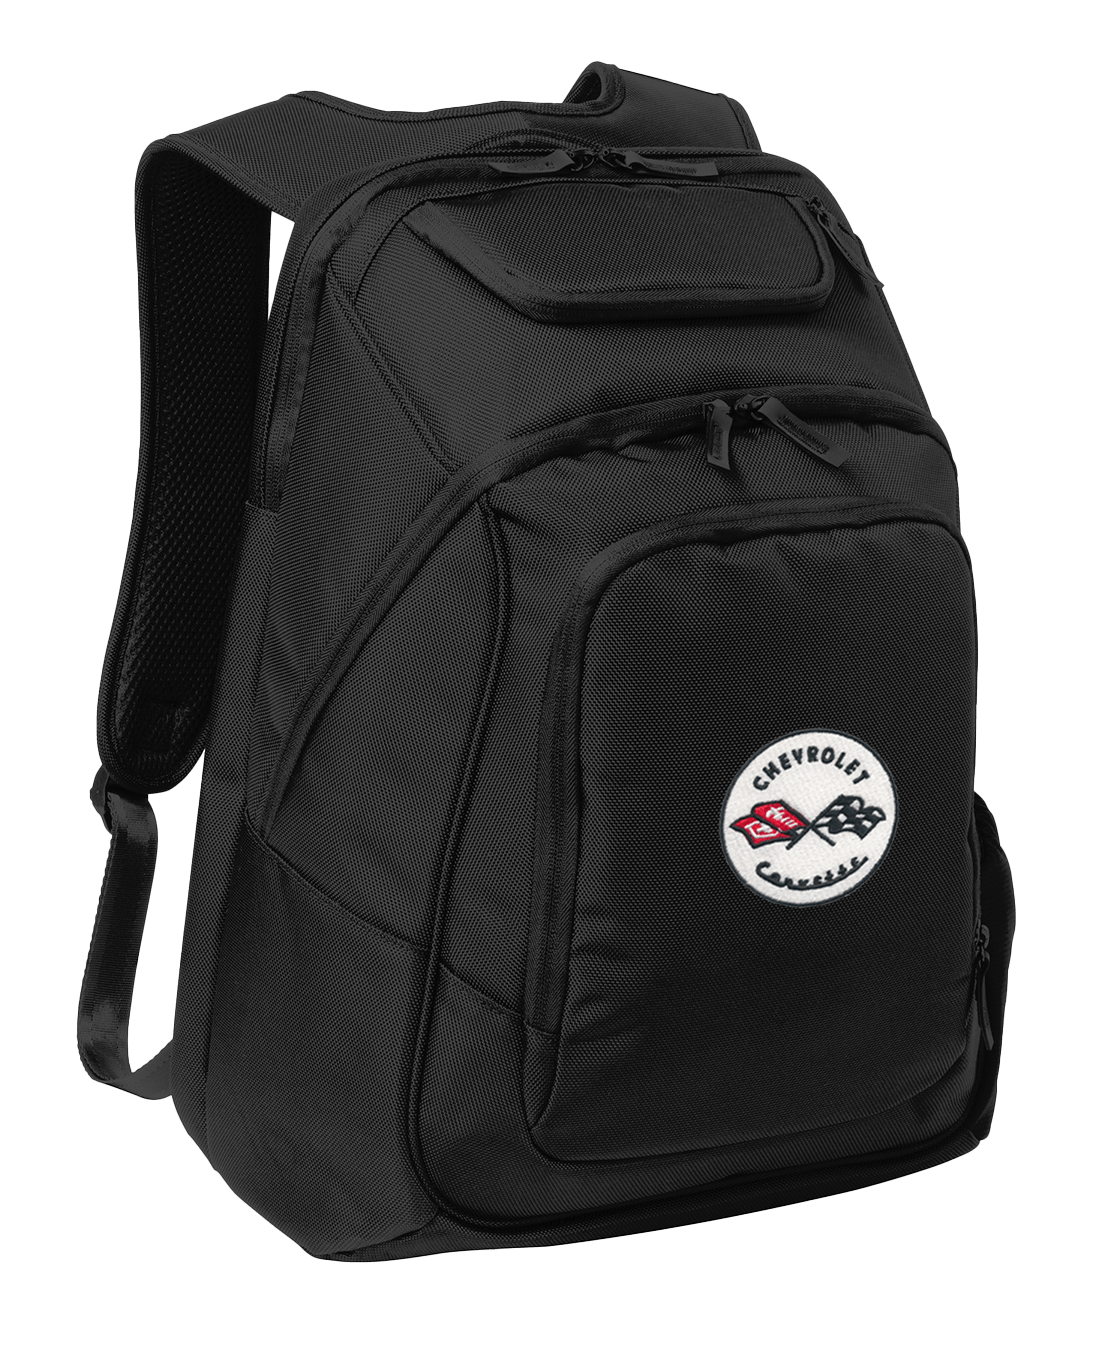 c1-corvette-embroidered-backpack-cvr90010101-corvette-store-online